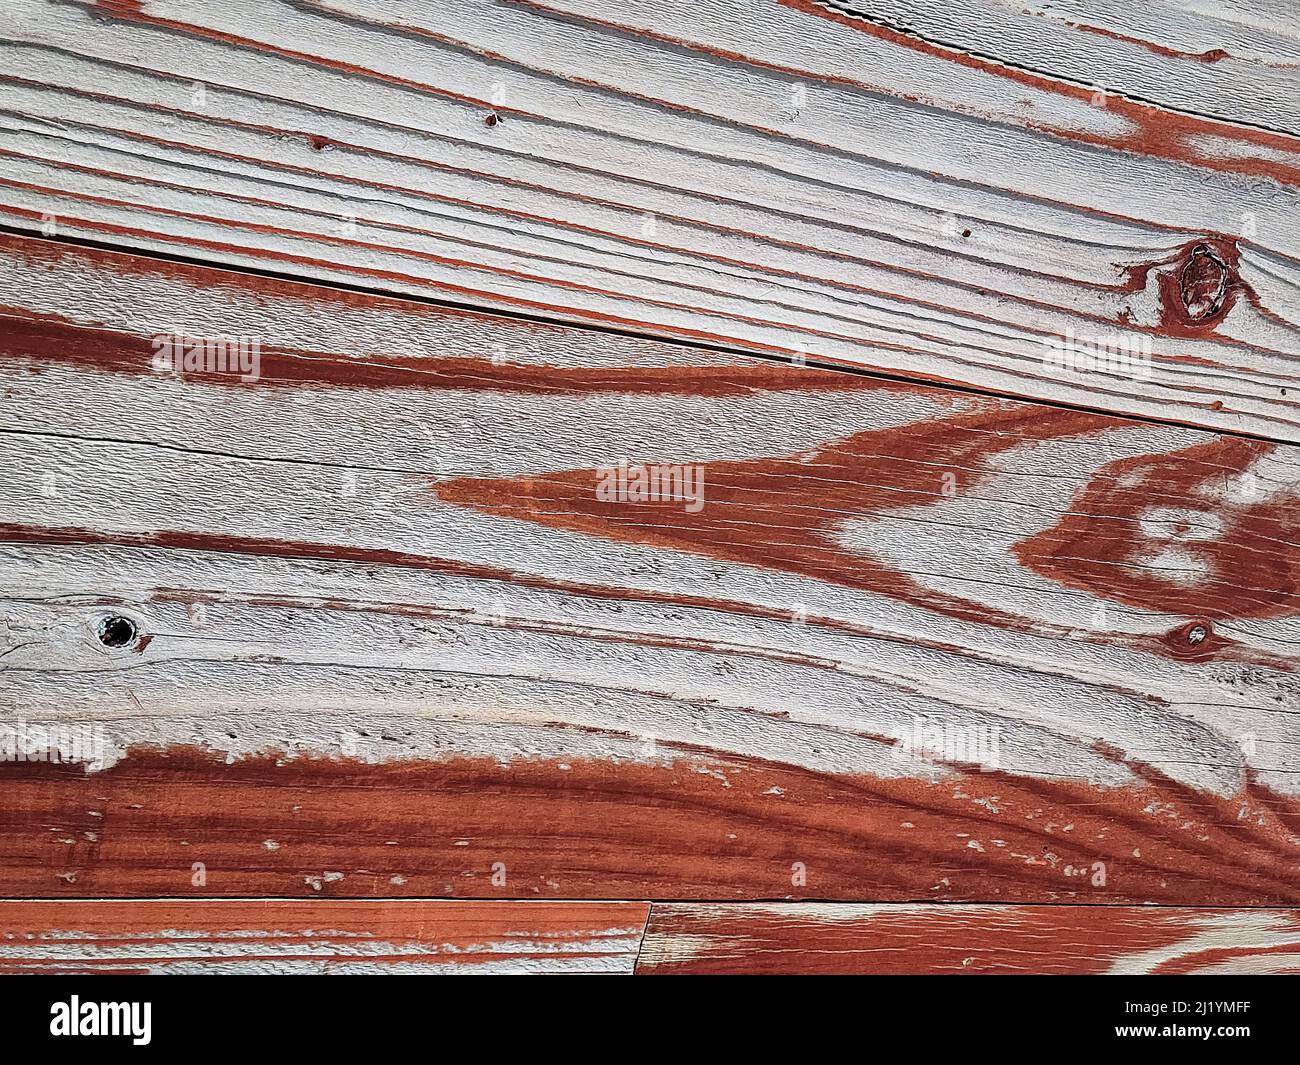 Gros plan de la peinture décolorée brun rougeâtre sur le bois abîmé Banque D'Images